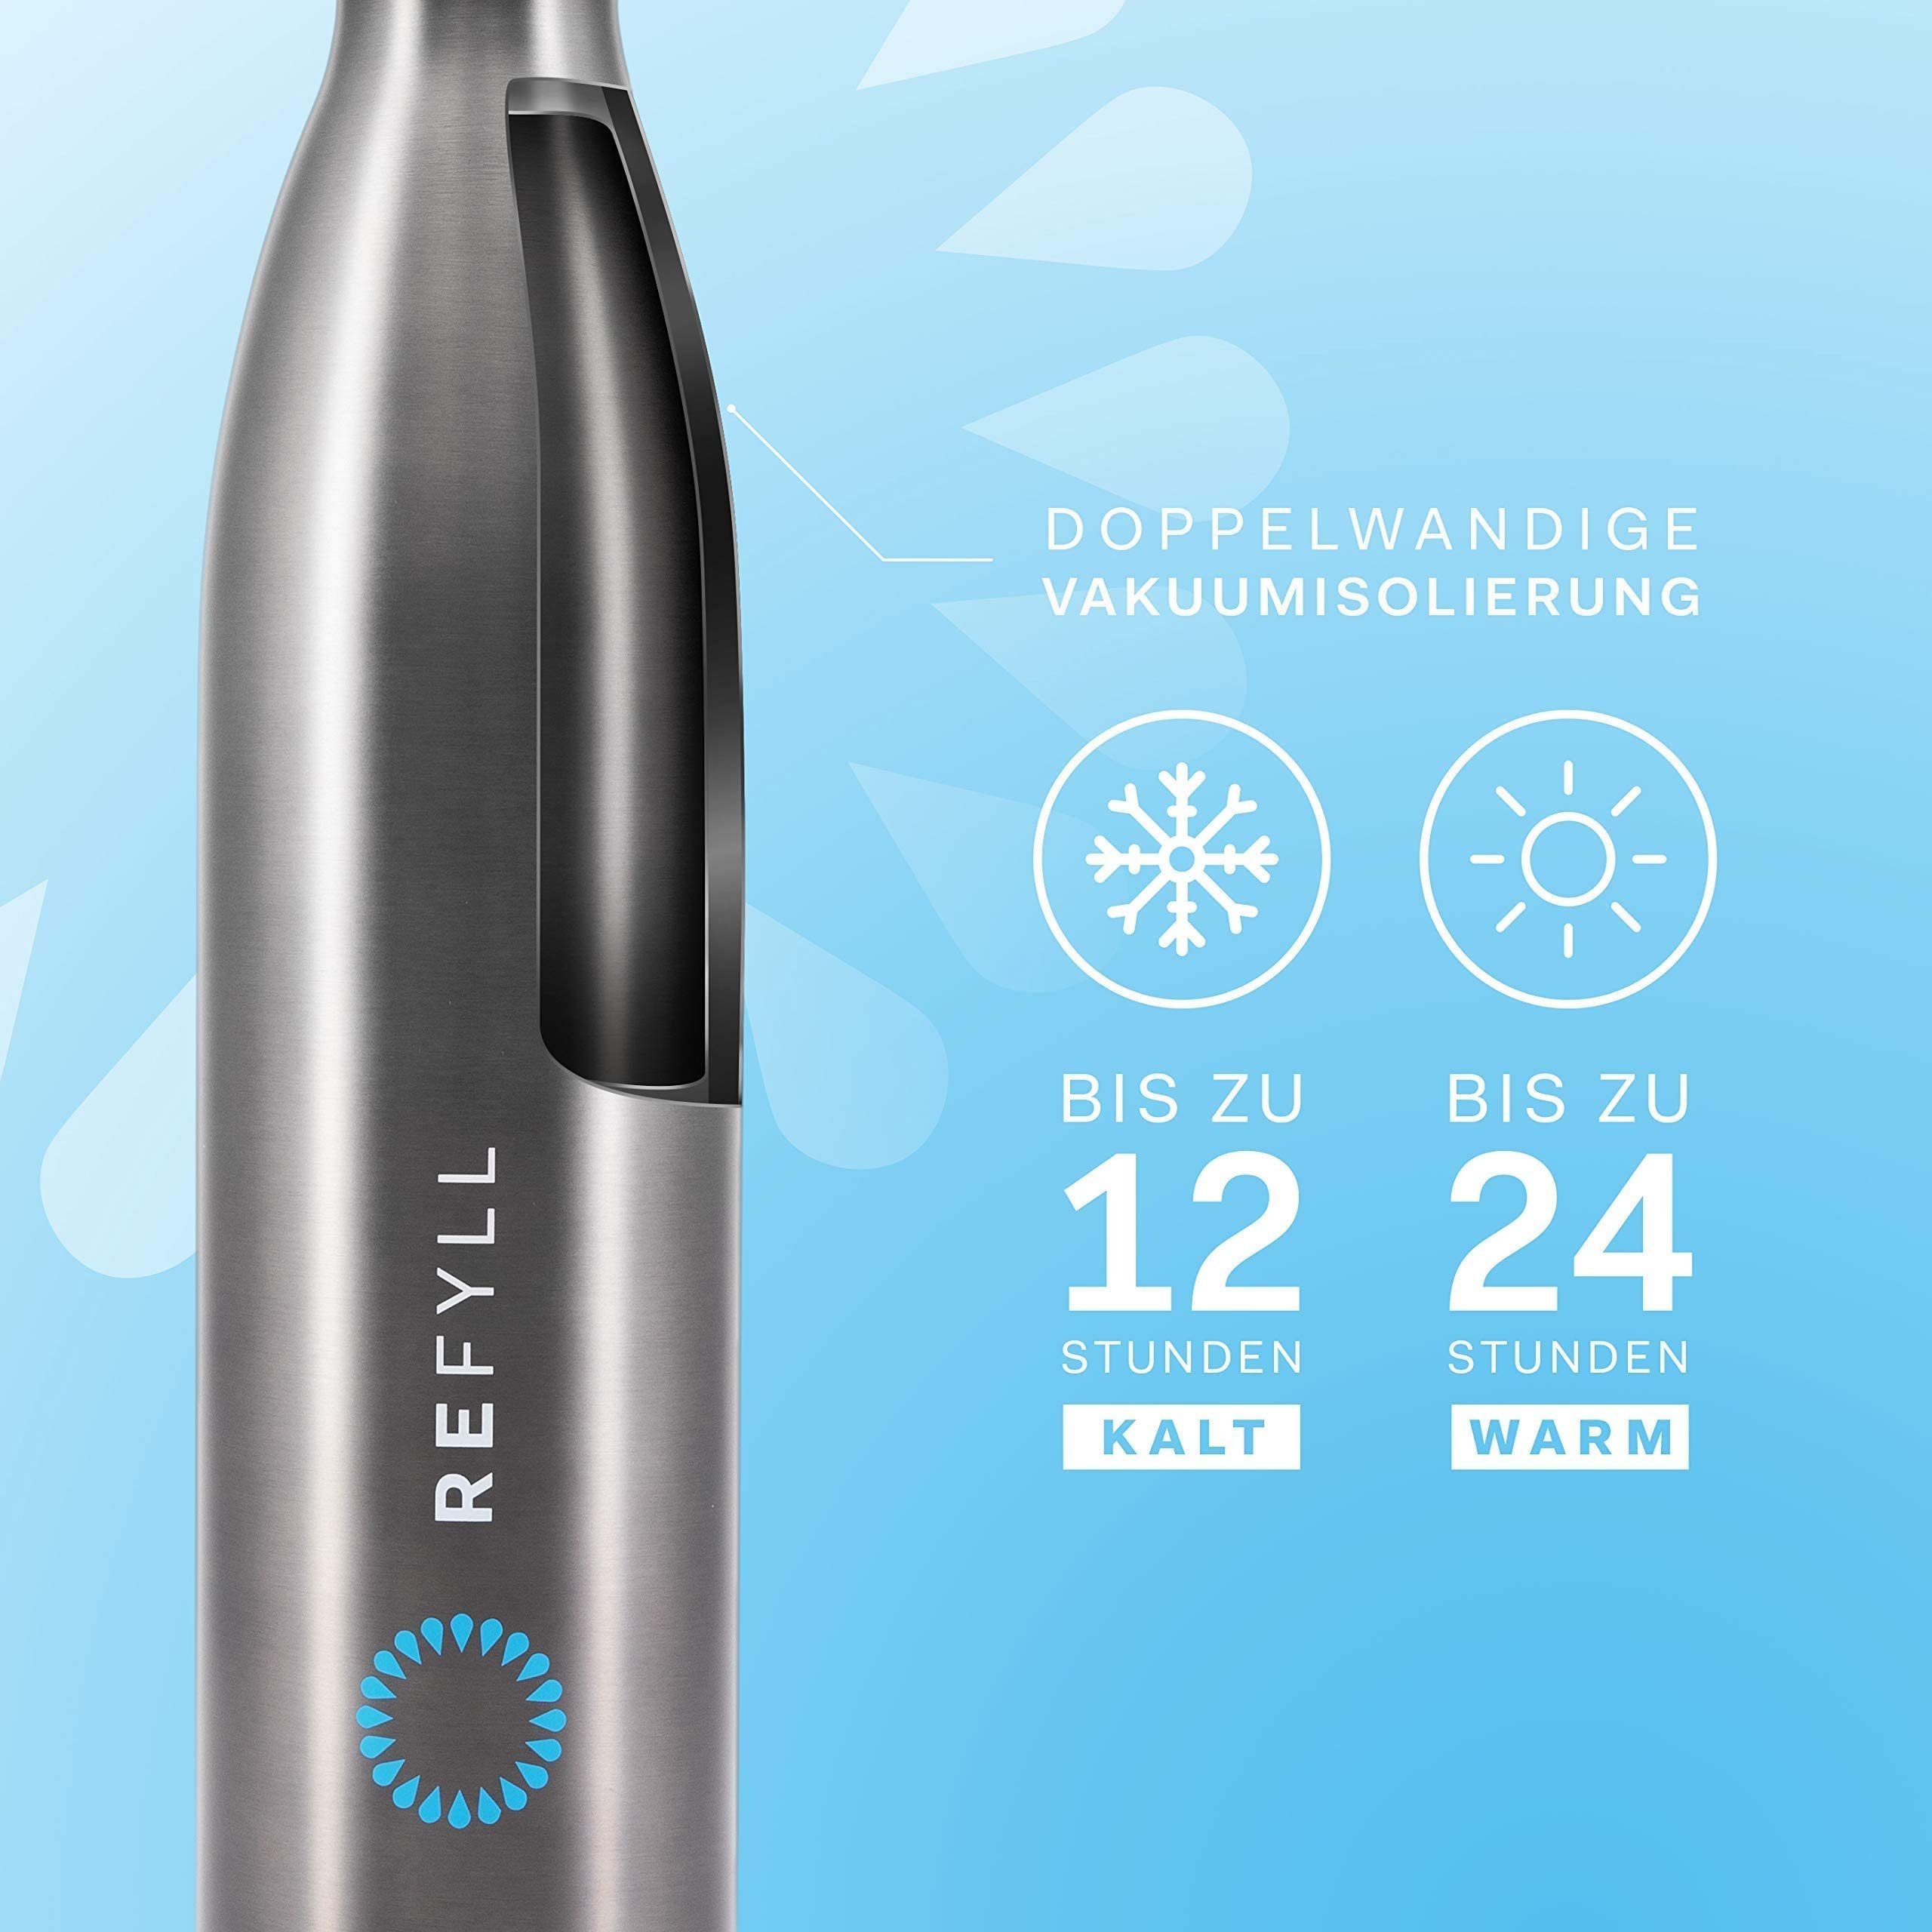 "dailyFYLL" doppelwandiger Vakuum 750ml, Grau mit 500ml, Thermosflasche isoliert, - & 1l Thermoflasche - Isolierung Trinkflasche REFYLL Auslaufsicher